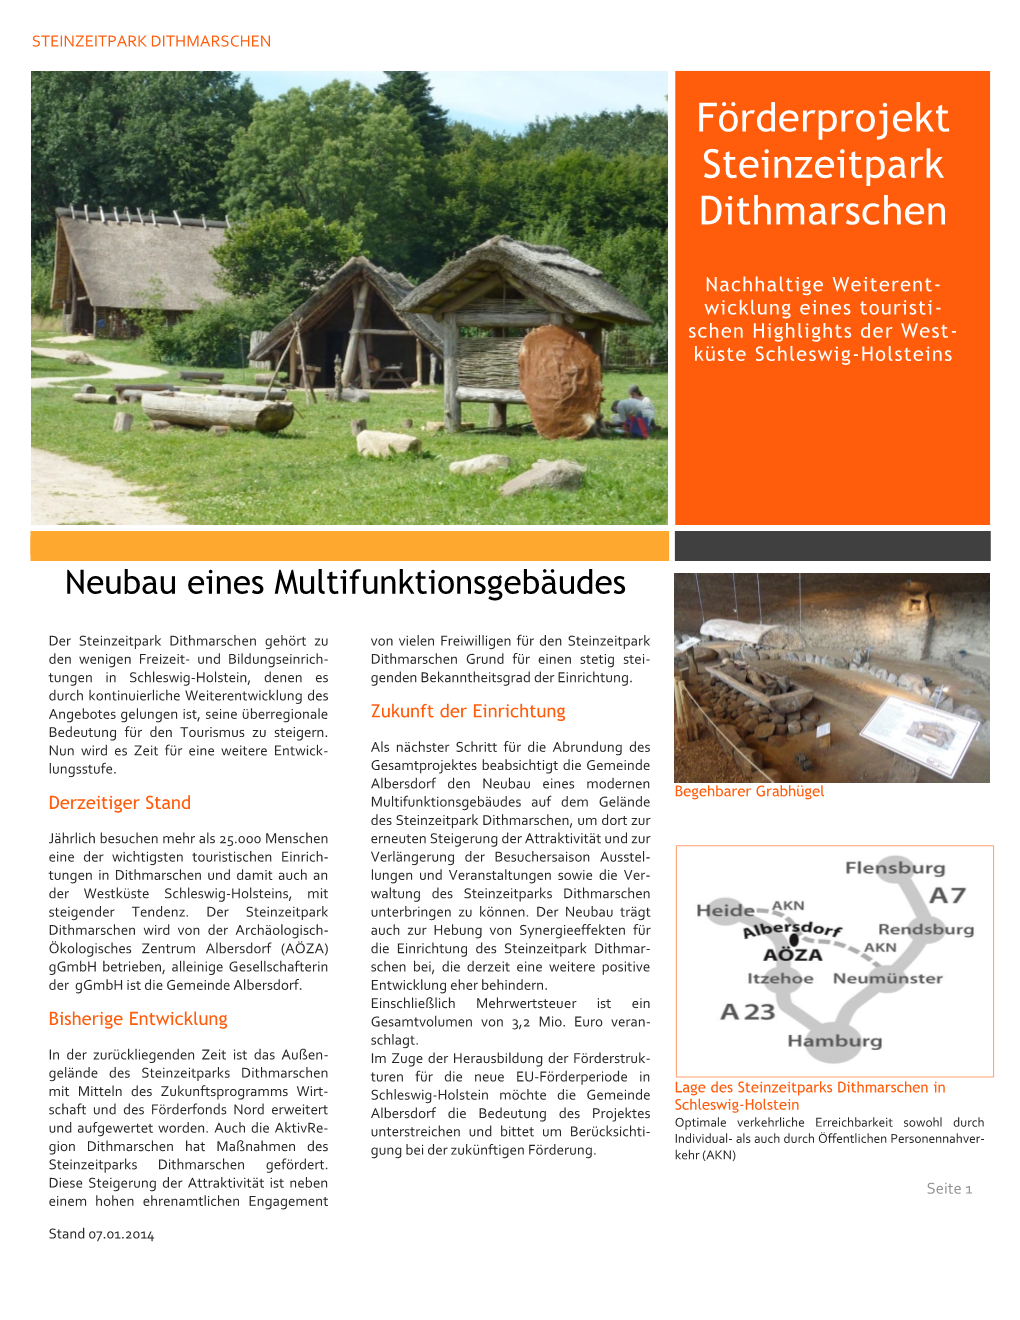 Förderprojekt Steinzeitpark Dithmarschen